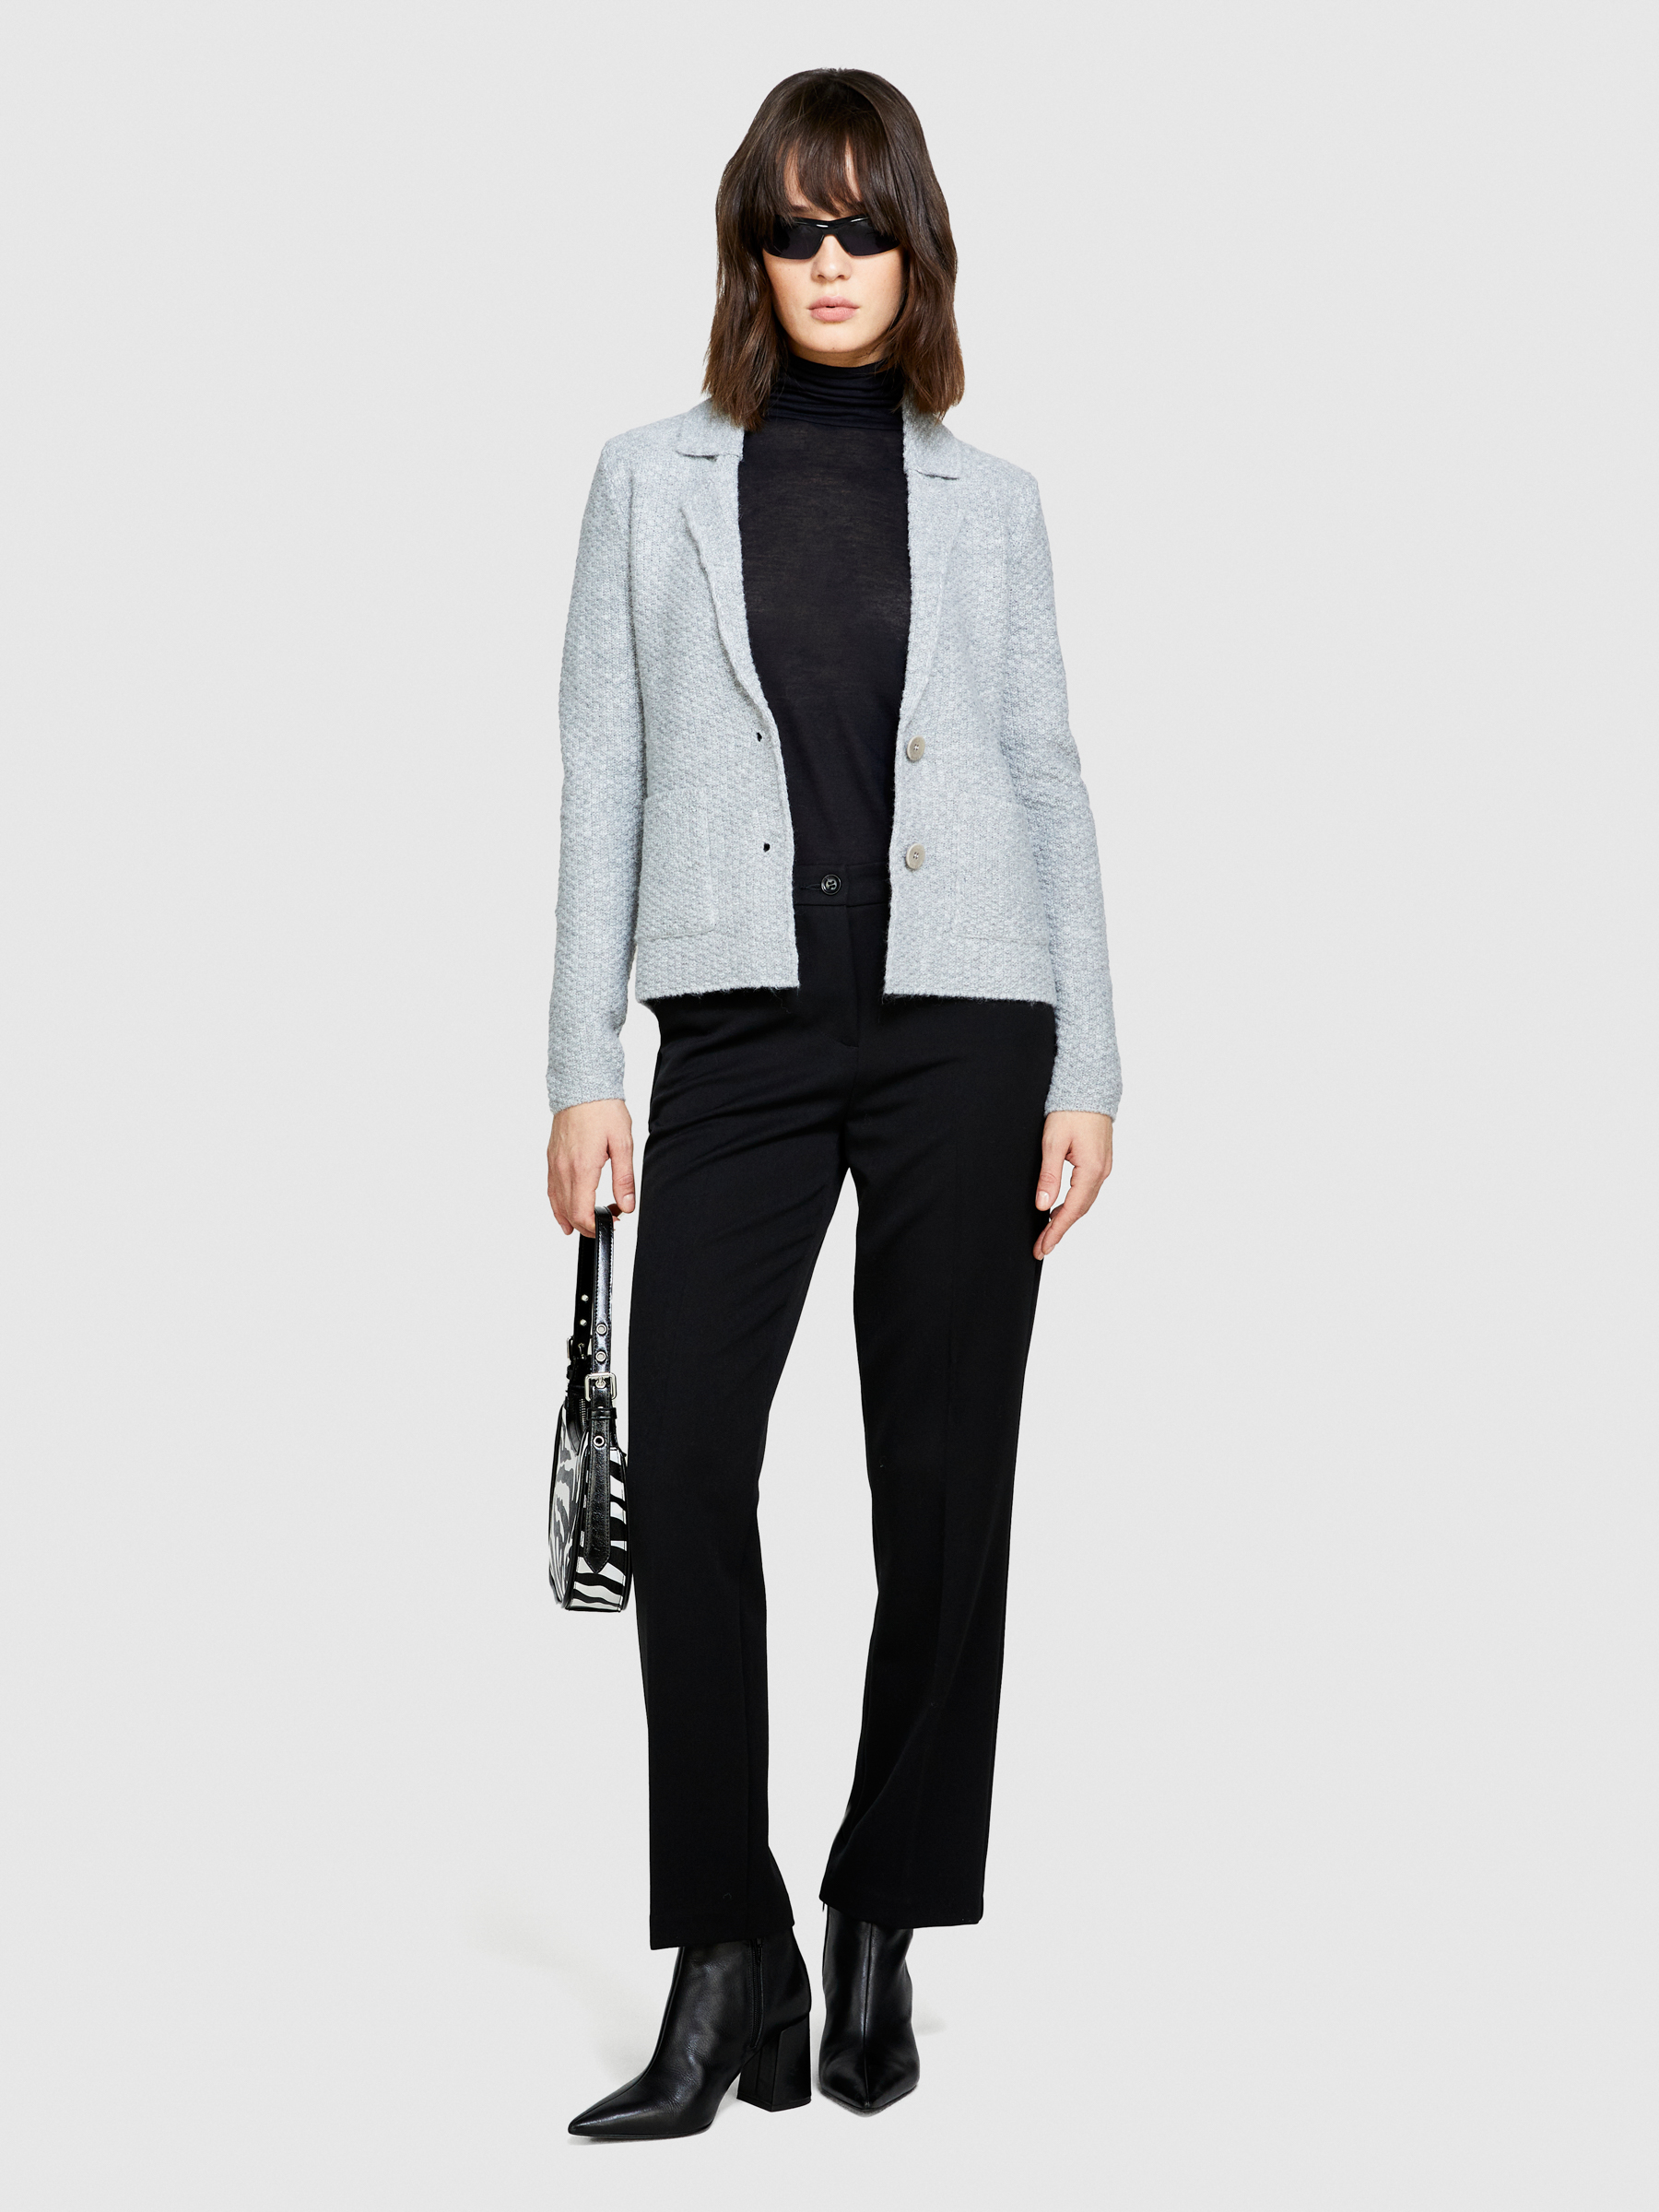 Sisley - Knit Blazer, Woman, Light Gray, Size: L